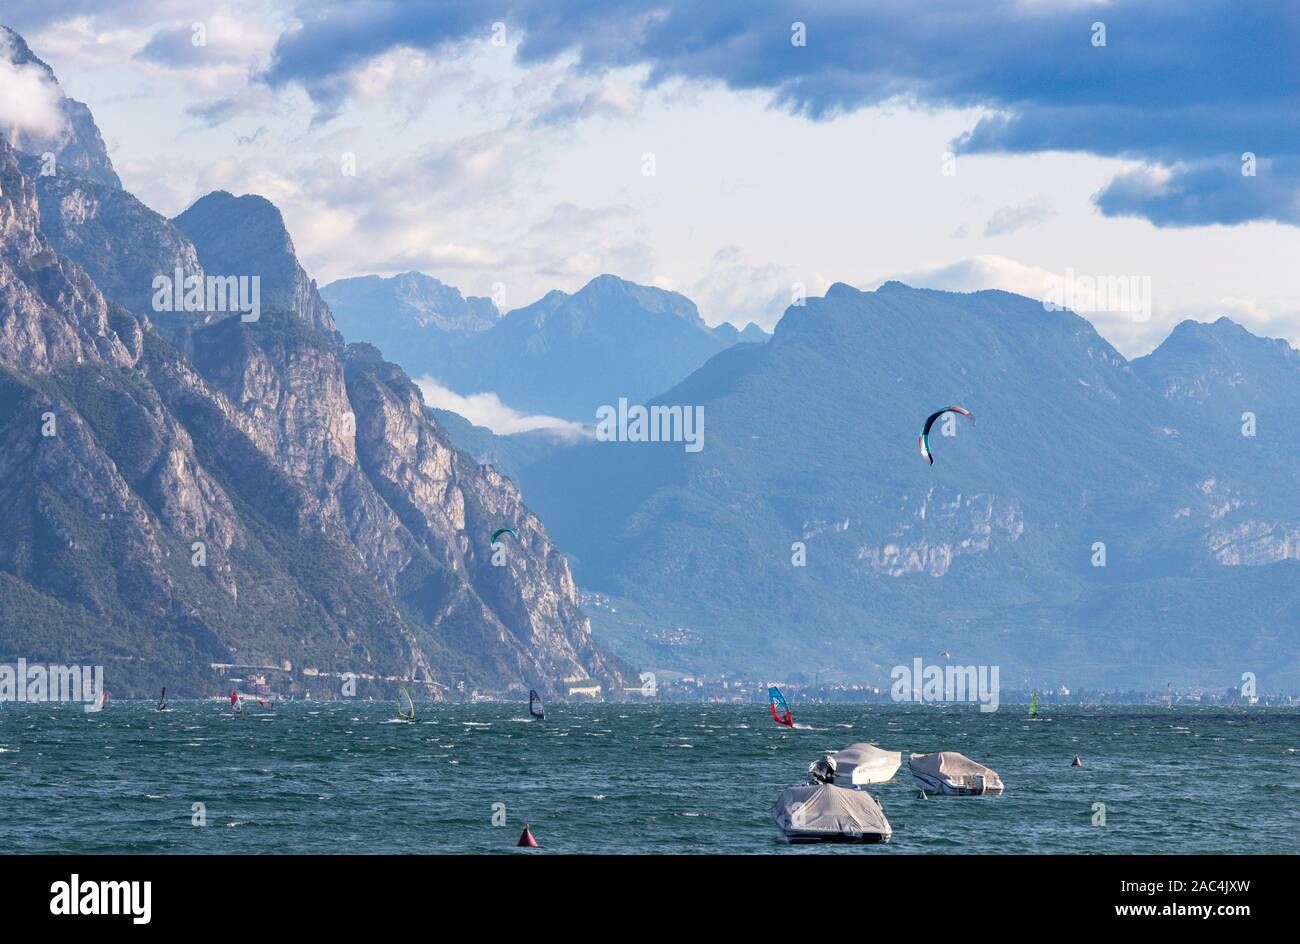 The windsurfers on the Lago di Garda. Stock Photo